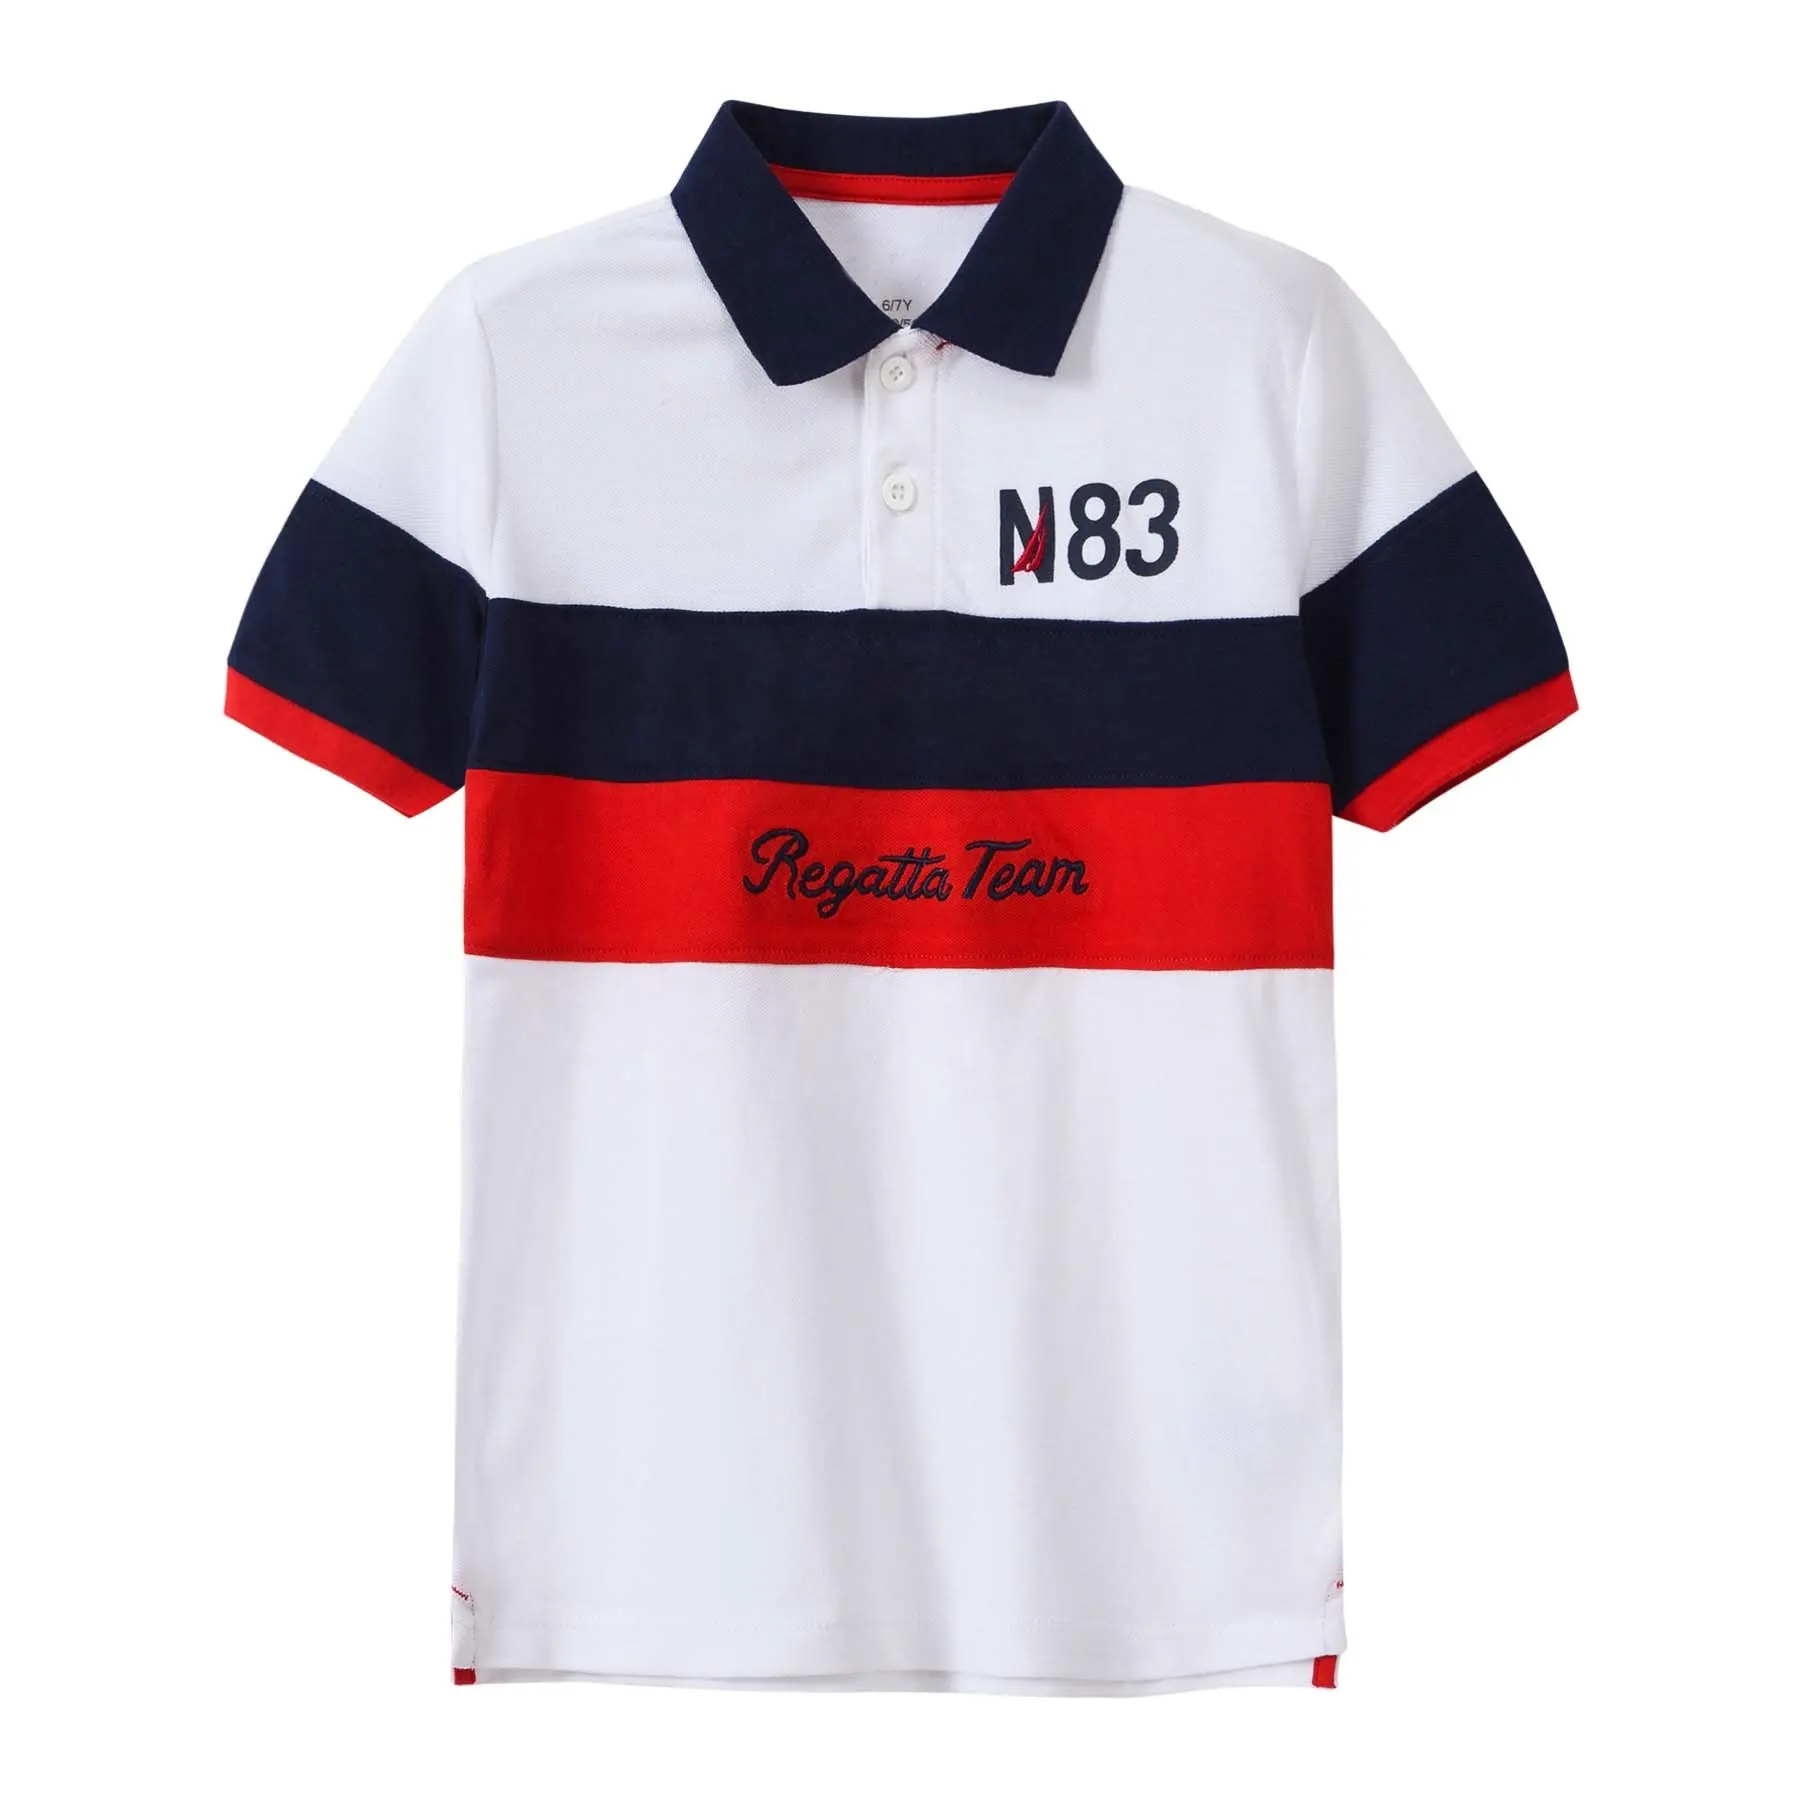 Спортивная одежда для гольфа, дизайнерские рубашки для гольфа собственного бренда, оптовая продажа рубашек-поло с индивидуальным логотипом